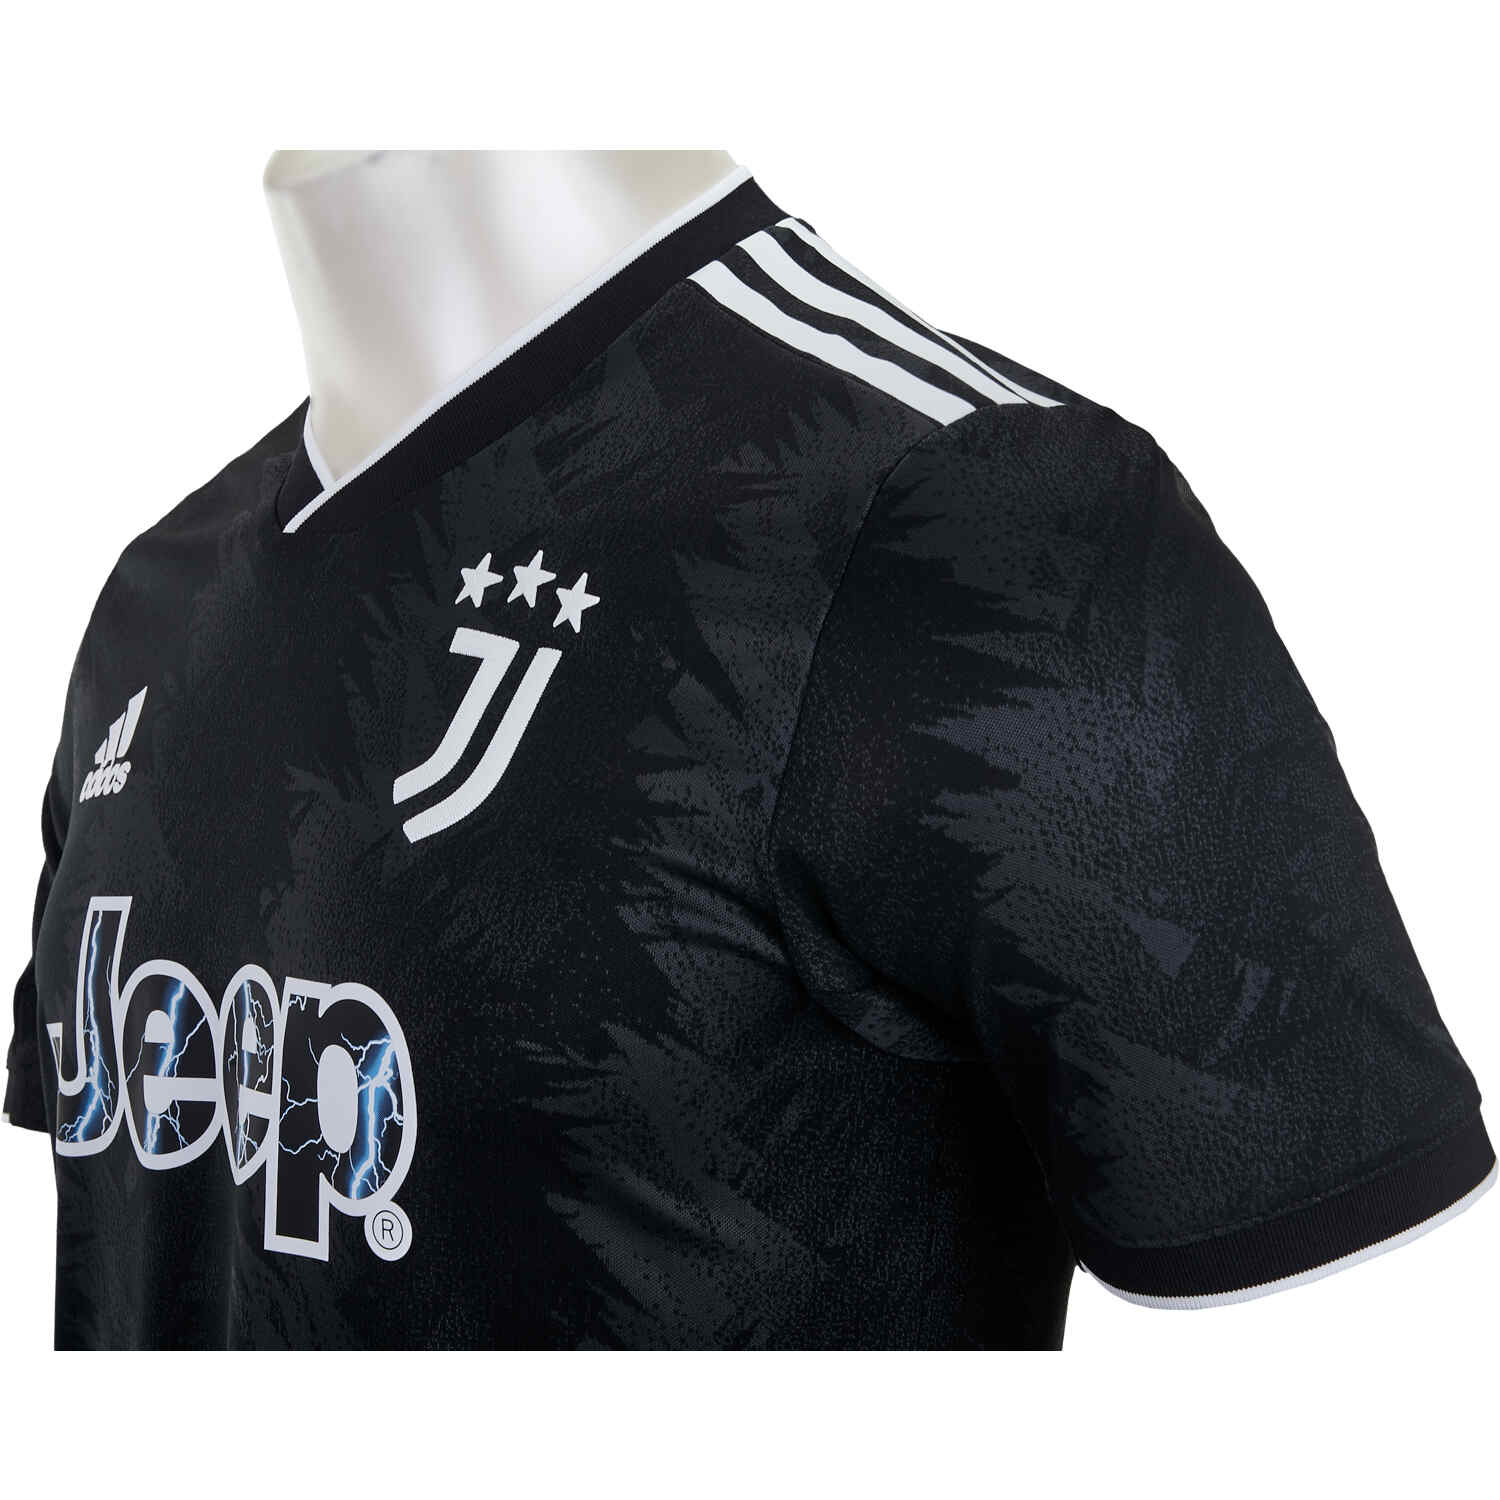 reactie baas Horzel adidas Juventus Away Authentic Jersey - 2022/23 - SoccerPro